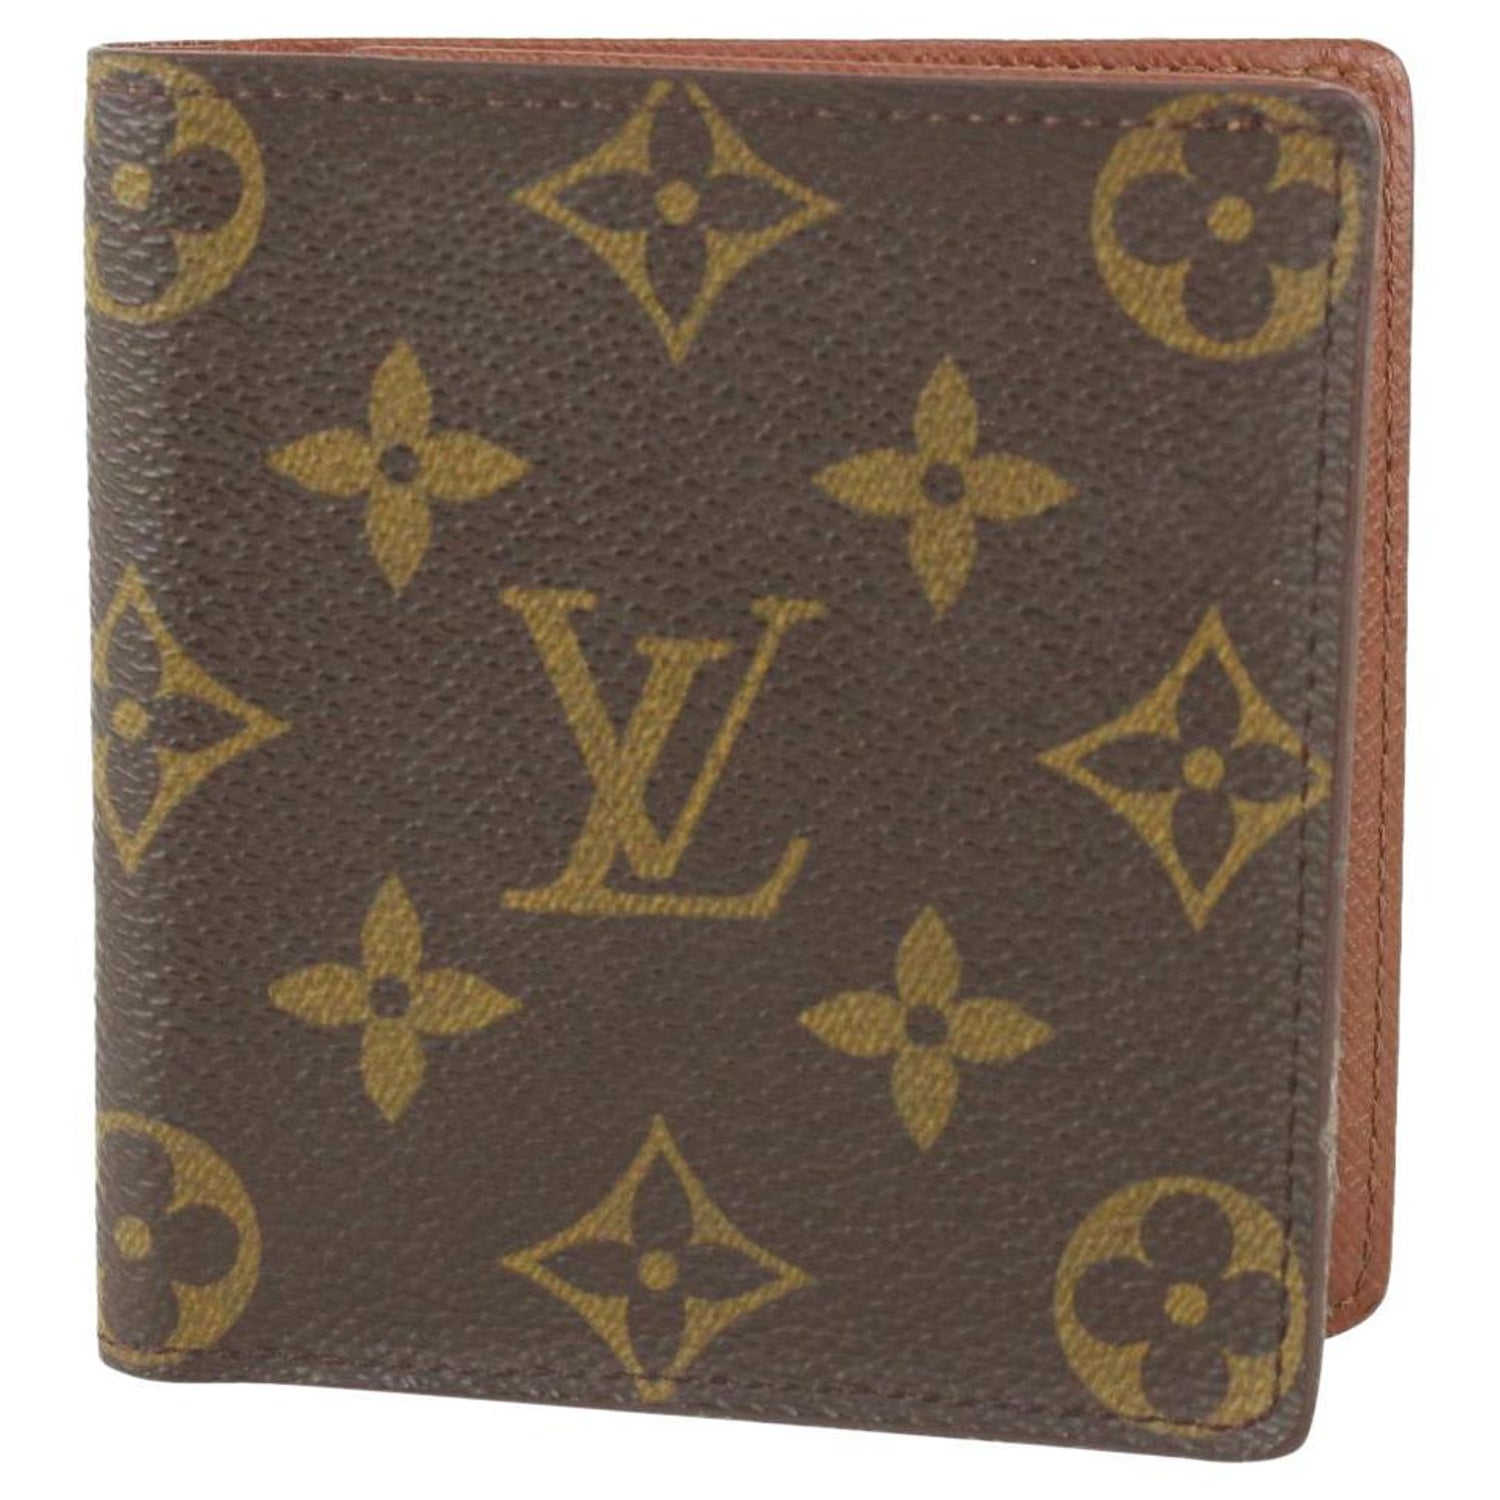 Louis Vuitton LV Monogram GM Boetie Long Wallet LV-1203P-0004